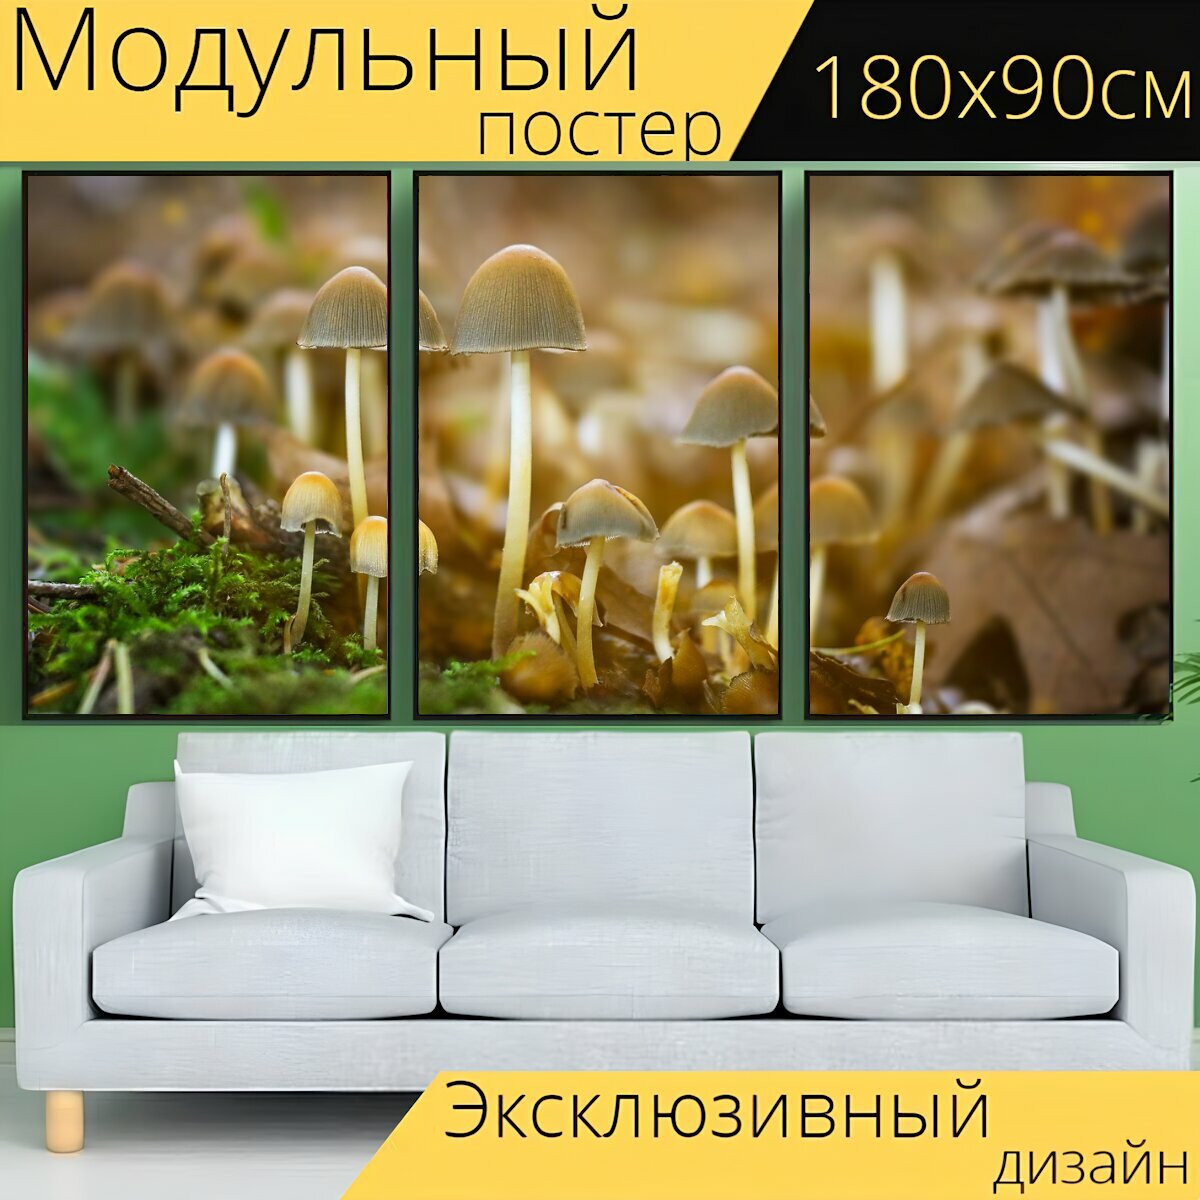 Модульный постер "Грибы, гриб, грибок" 180 x 90 см. для интерьера